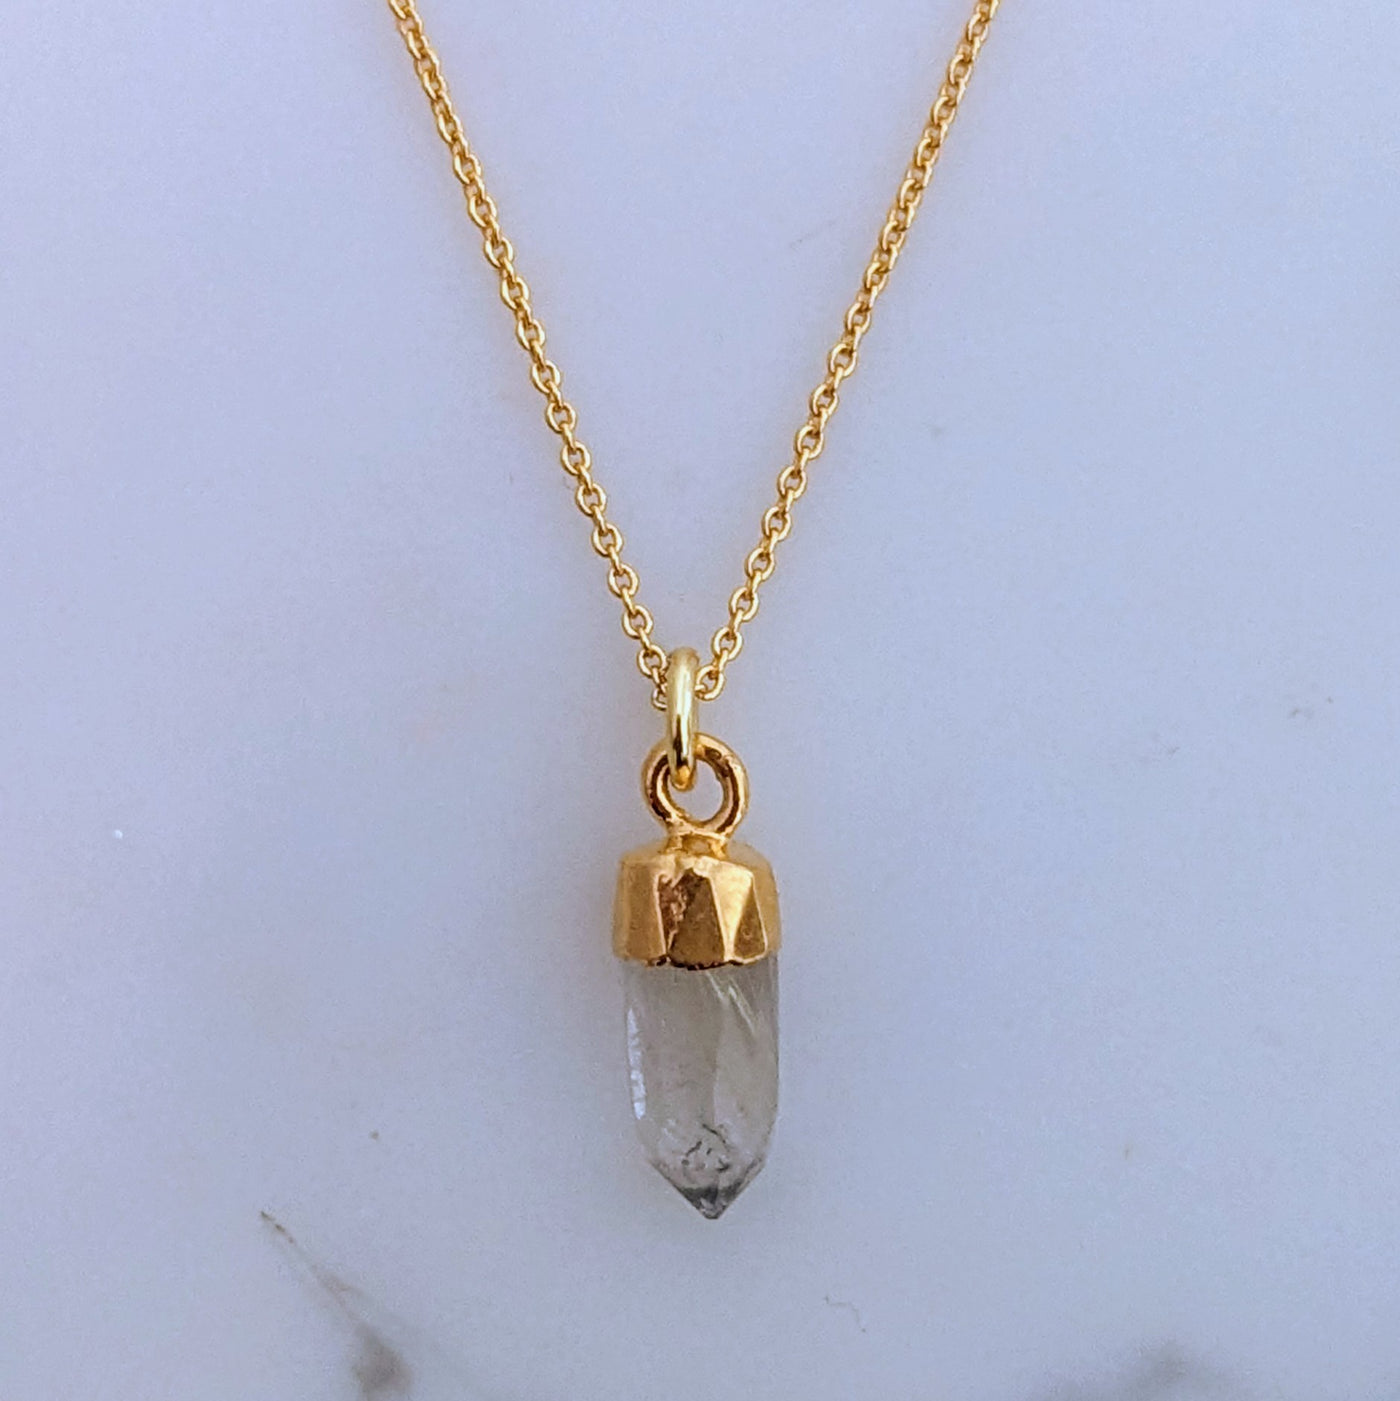 Golden rutile quartz spike pendant necklace